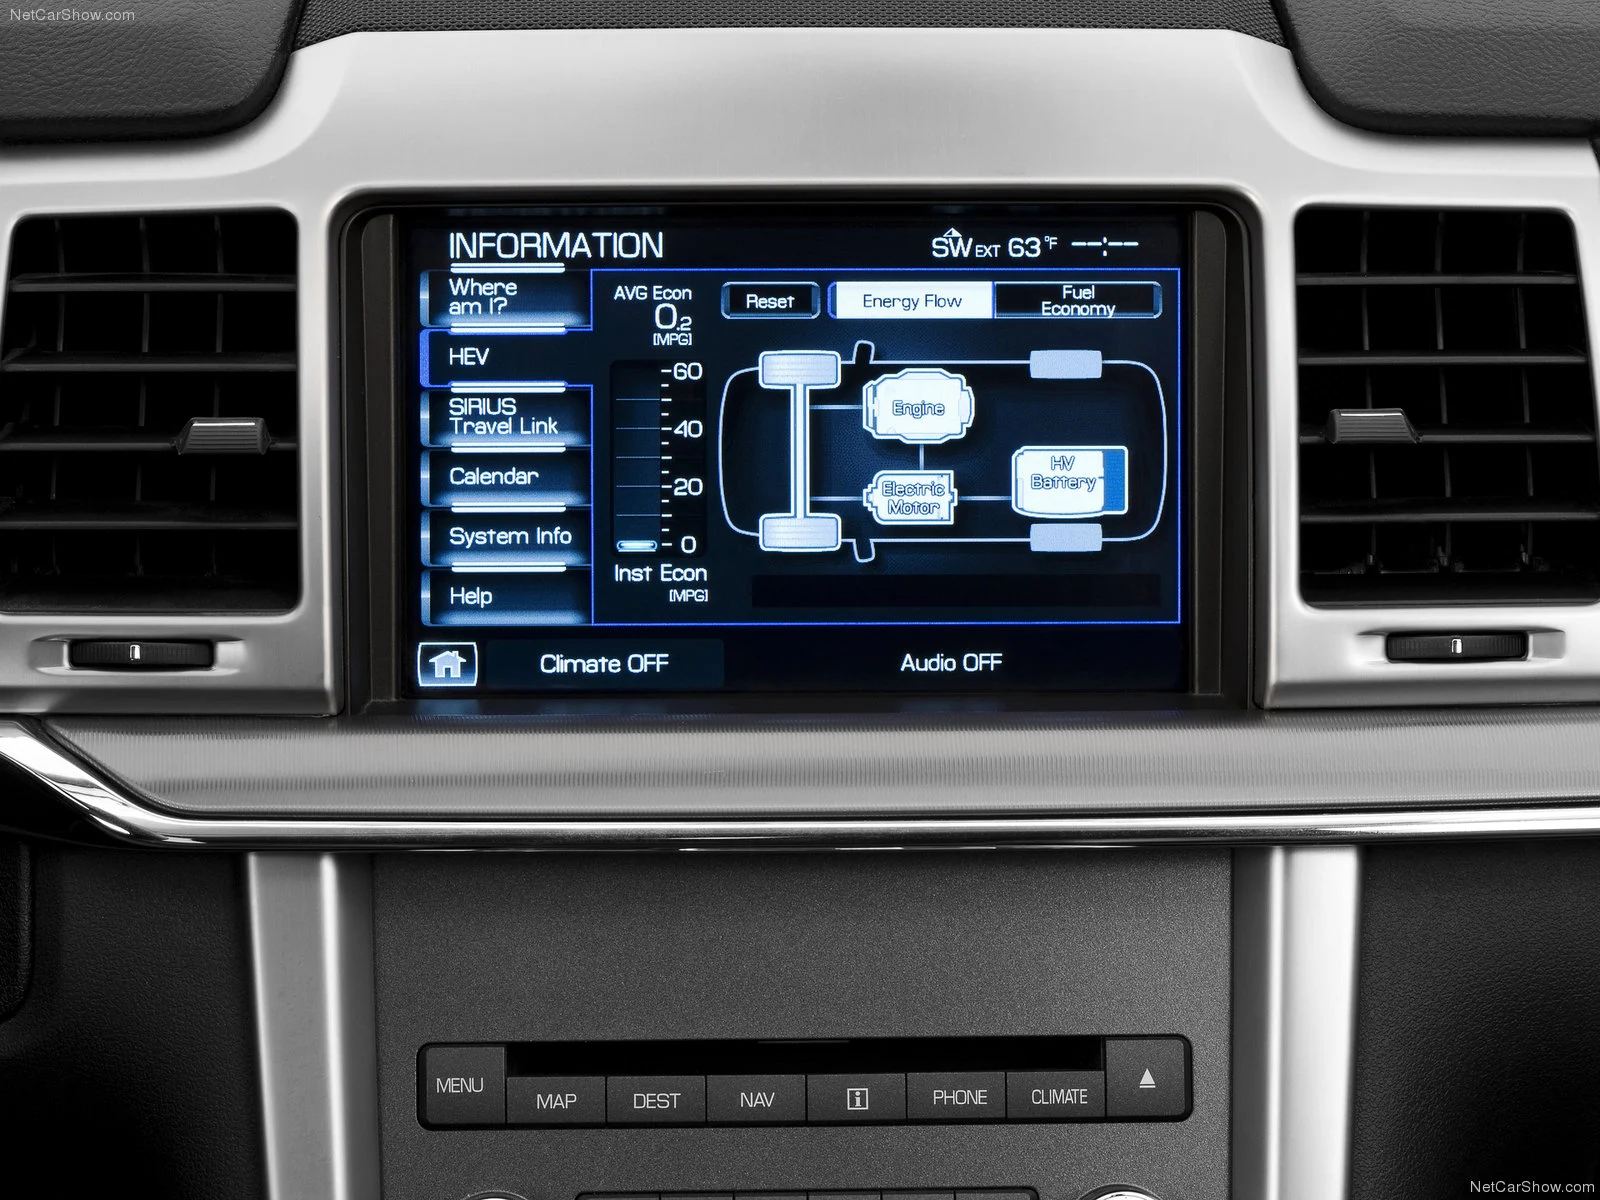 Hình ảnh xe ô tô Lincoln MKZ Hybrid 2011 & nội ngoại thất